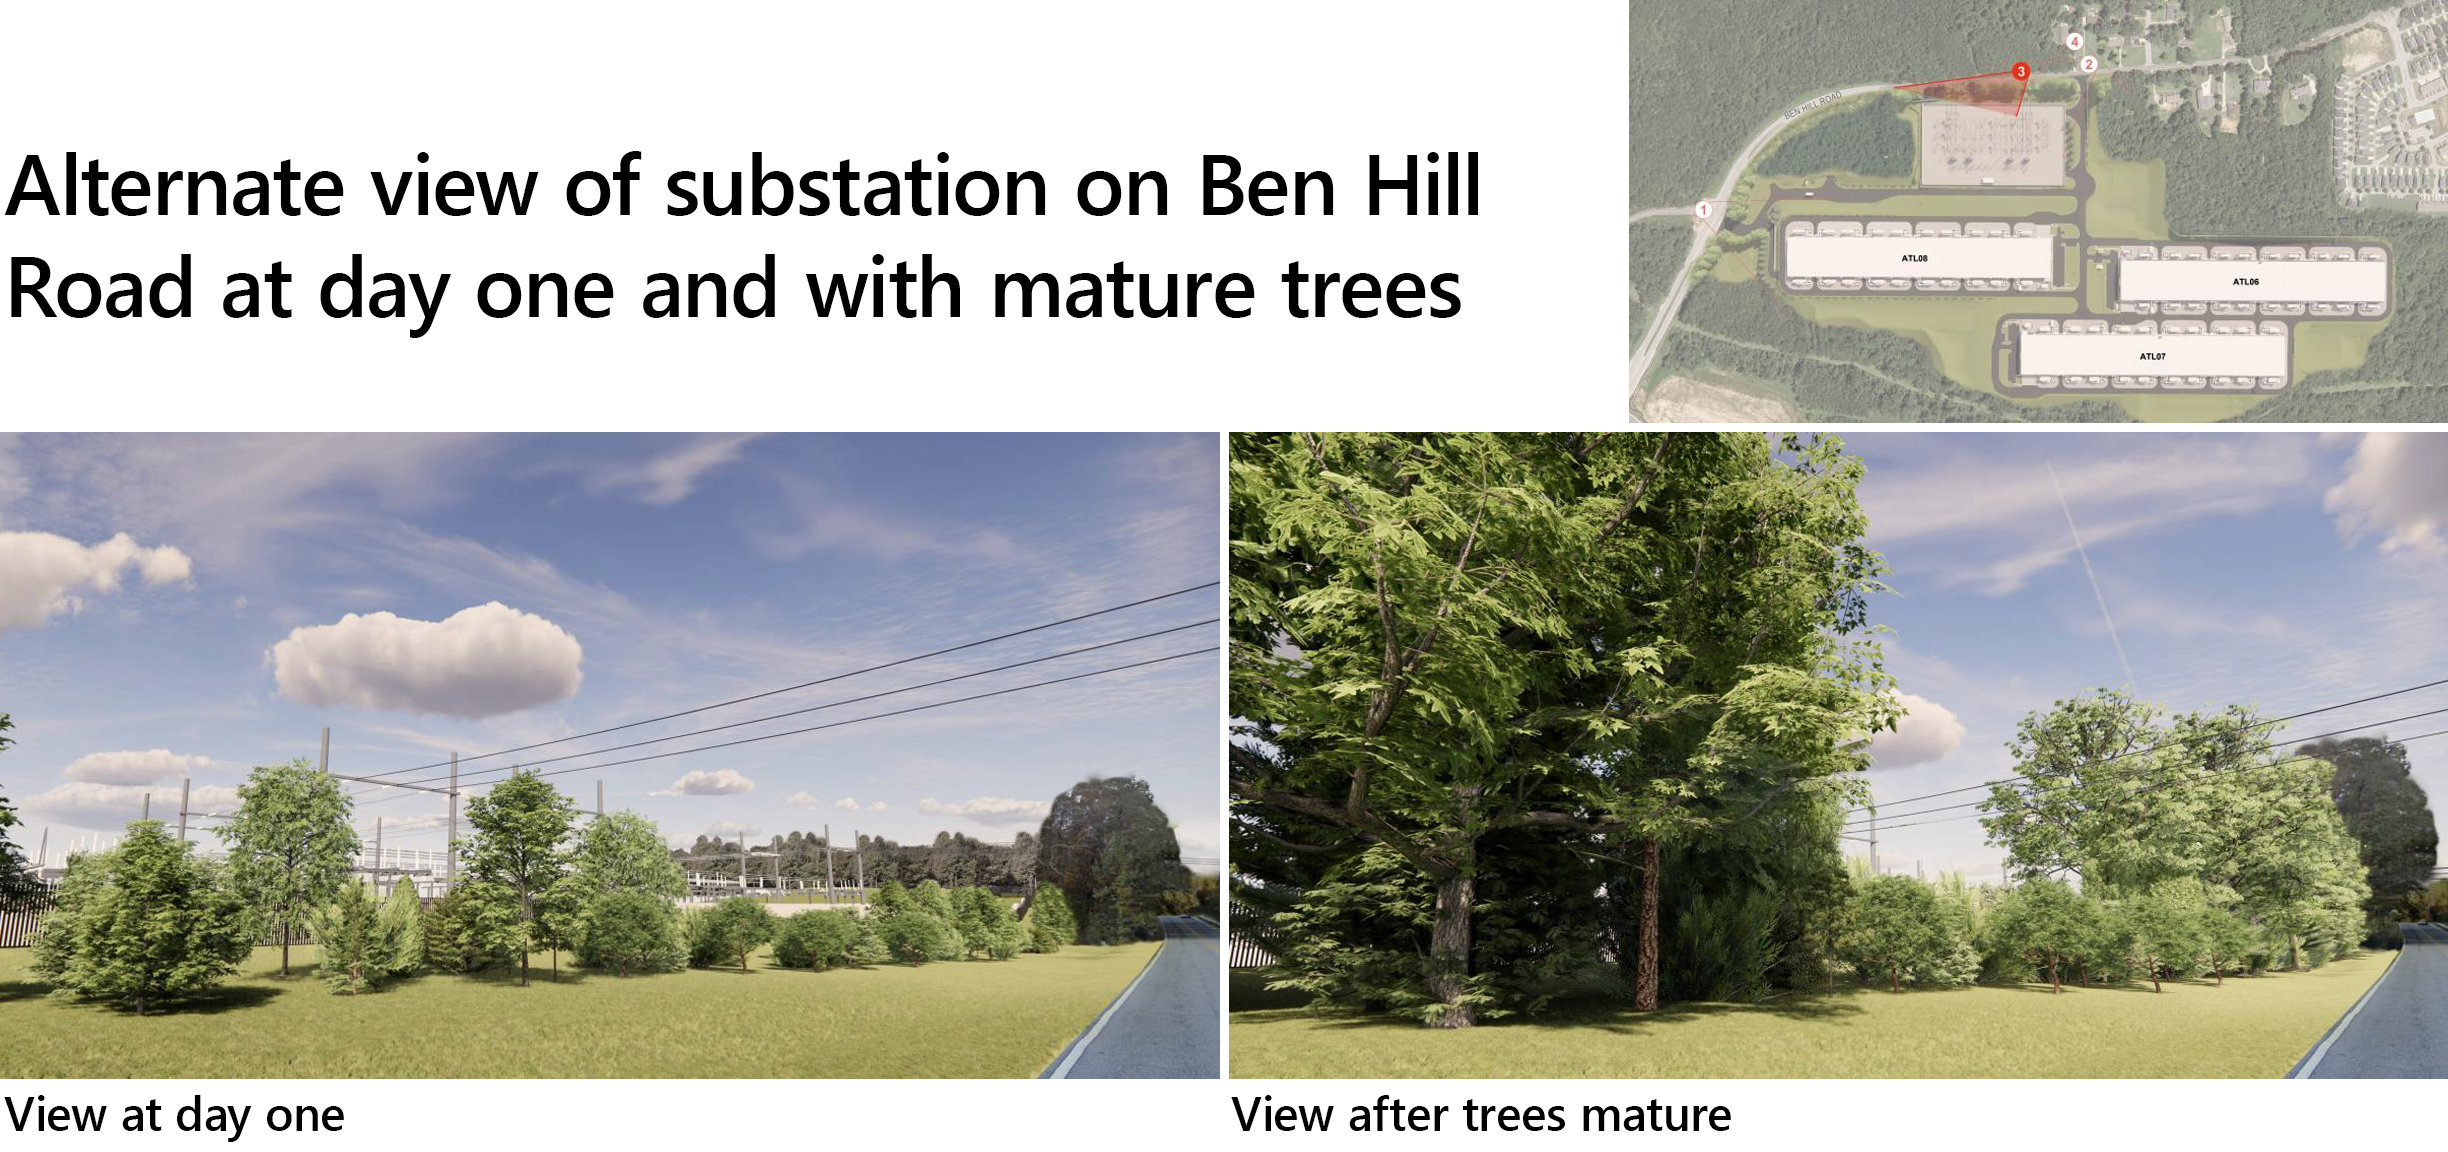 Εναλλακτική άποψη του υποσταθμού στην οδό Ben Hill την πρώτη μέρα και με ώριμα δέντρα